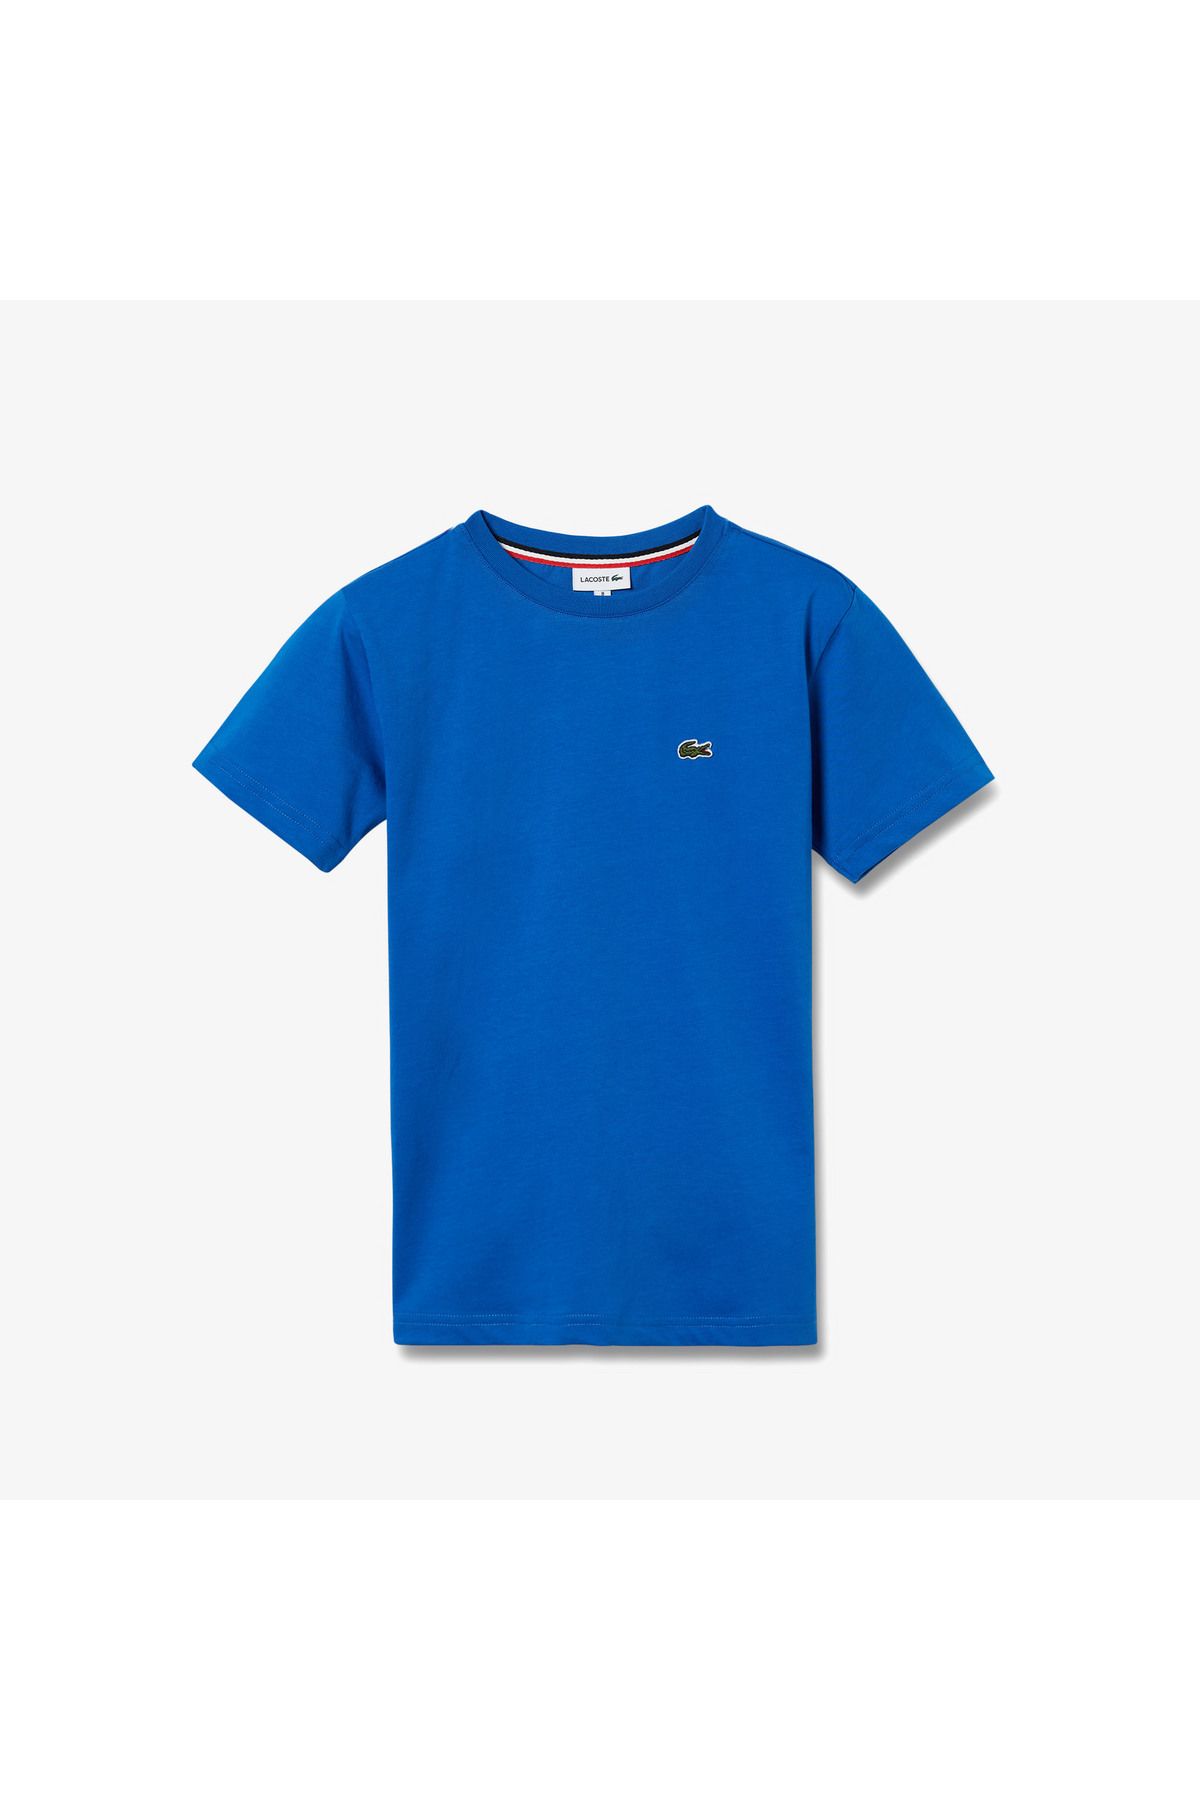 Lacoste Çocuk Mavi T-shirt